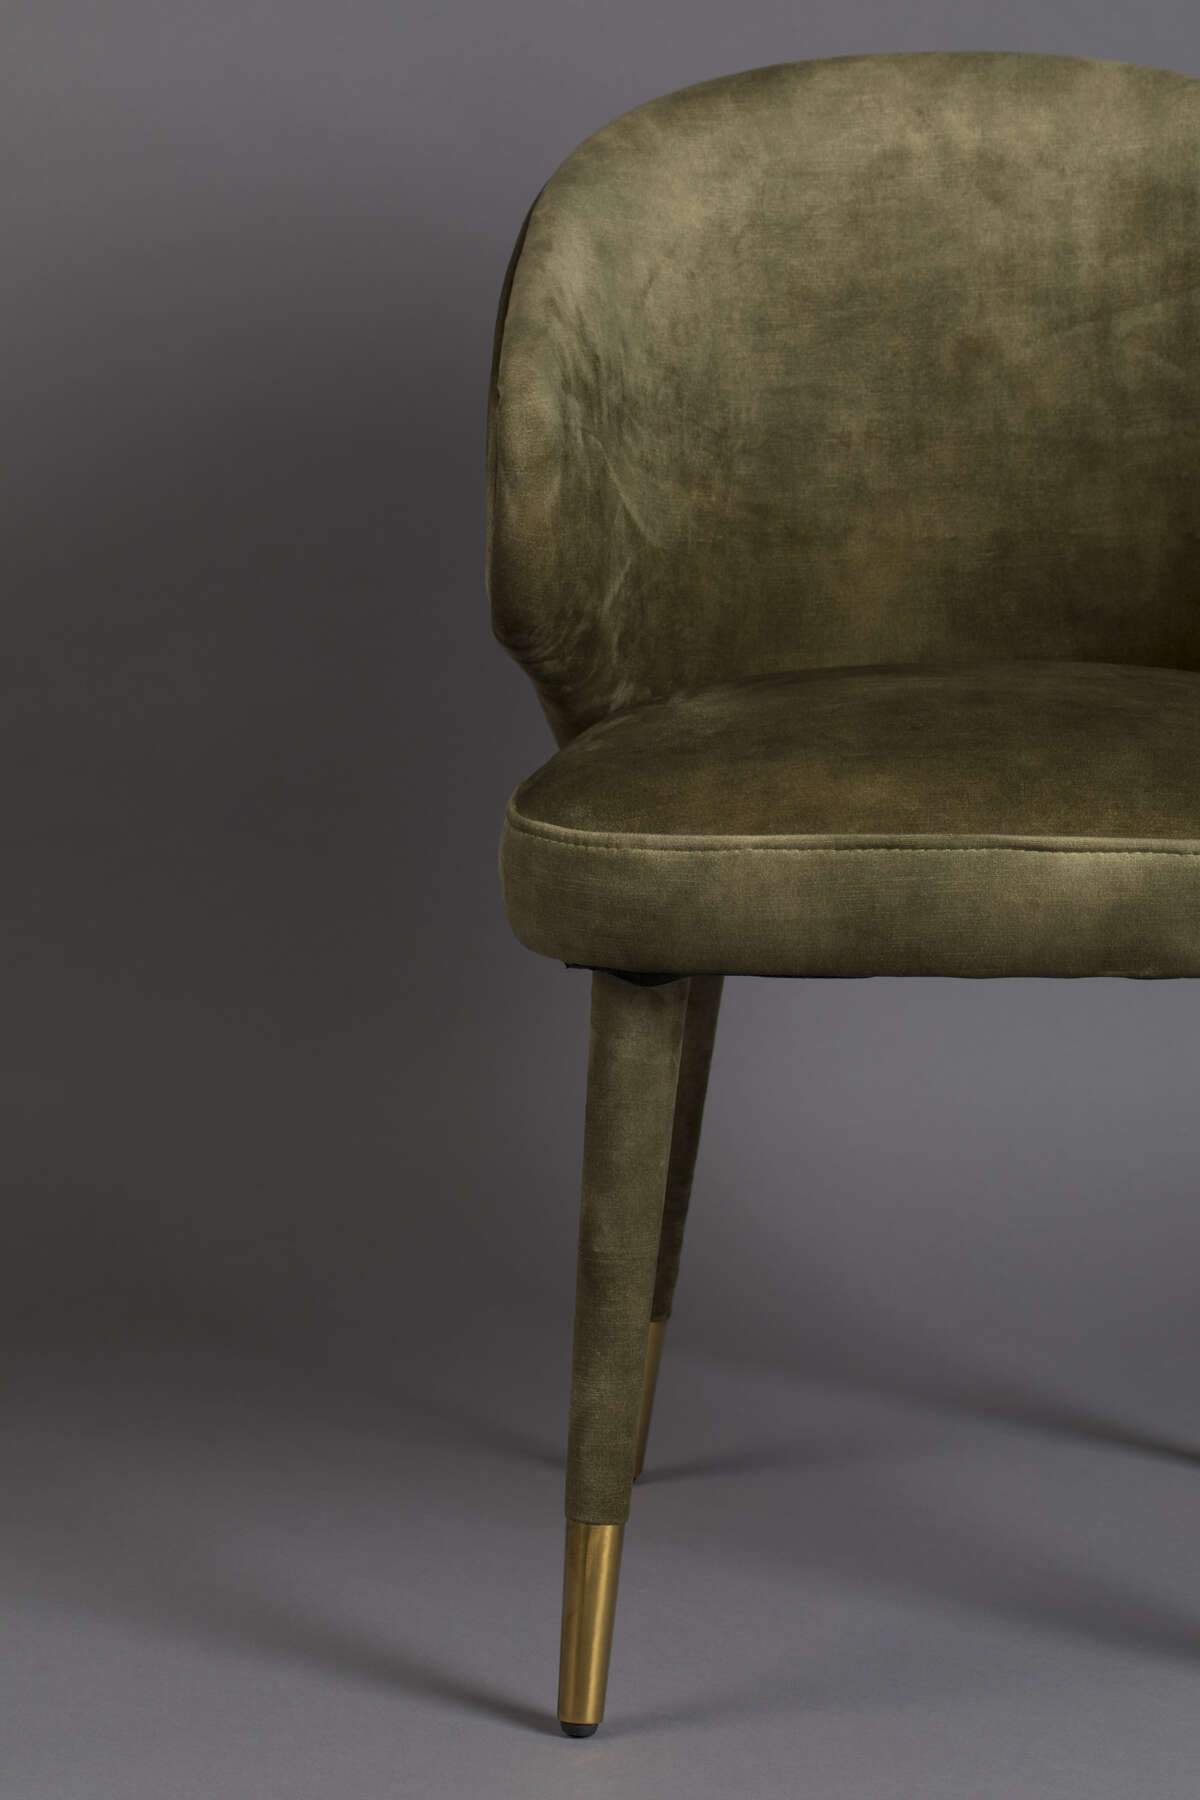 LUNAR VELVET chair green, Dutchbone, Eye on Design